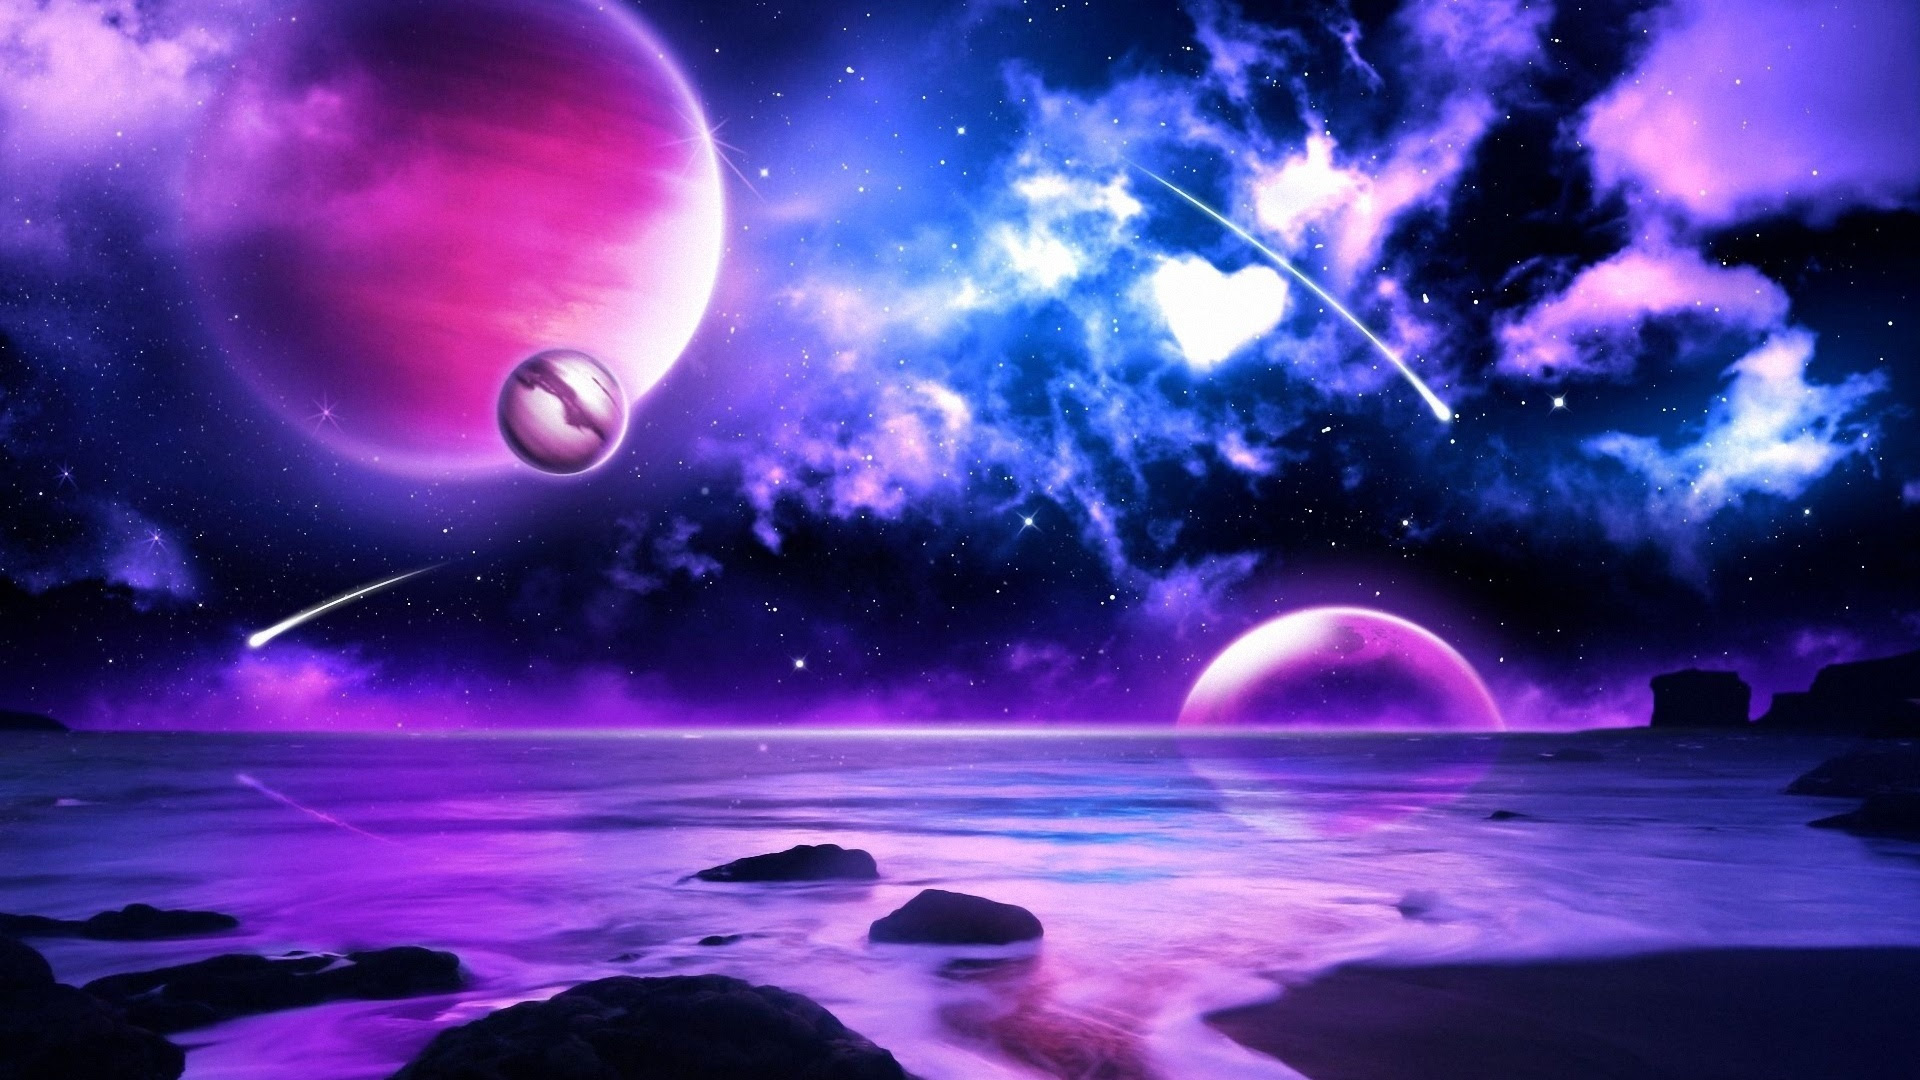 HD Purple Space Wallpaper - WallpaperSafari